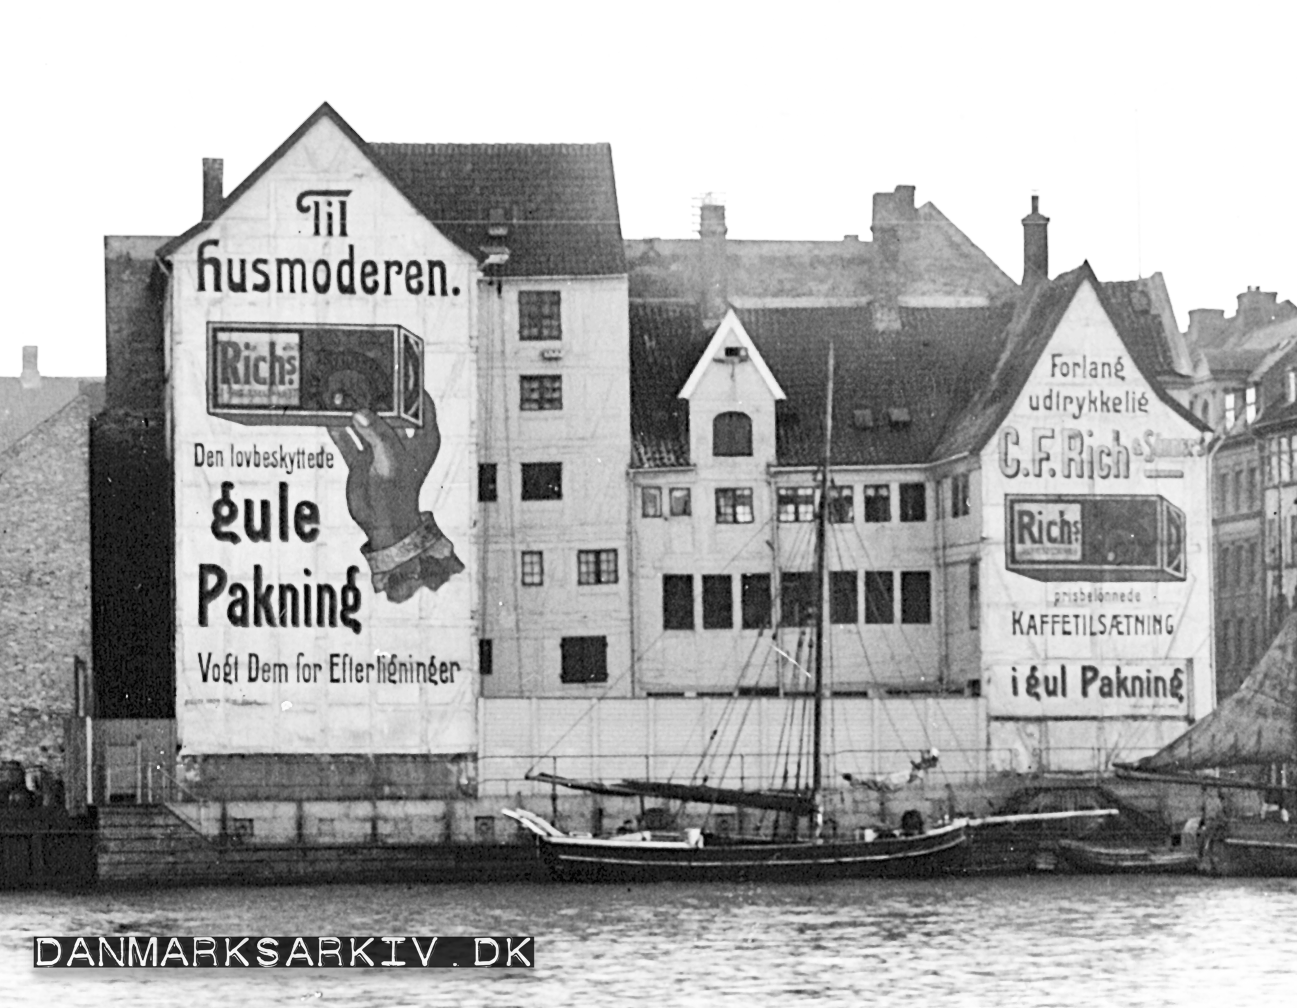 Store gavlreklamer for Rich's kaffe erstatning ved siden af Knippelsbro - København 1911